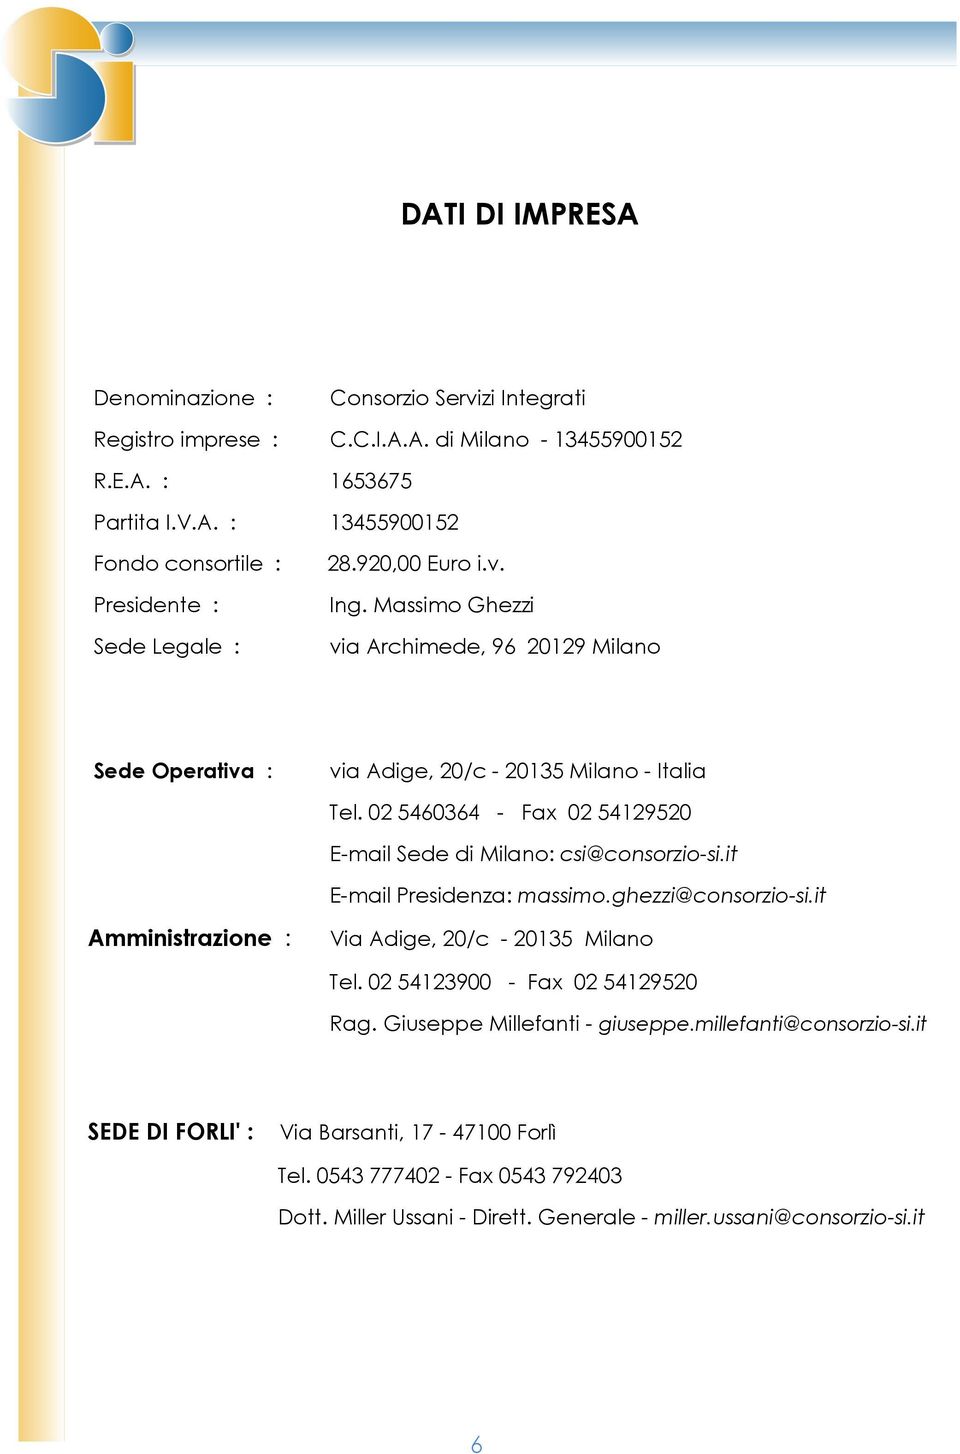 02 5460364 - Fax 02 54129520 E-mail Sede di Milano: csi@consorzio-si.it E-mail Presidenza: massimo.ghezzi@consorzio-si.it Amministrazione : Via Adige, 20/c - 20135 Milano Tel.